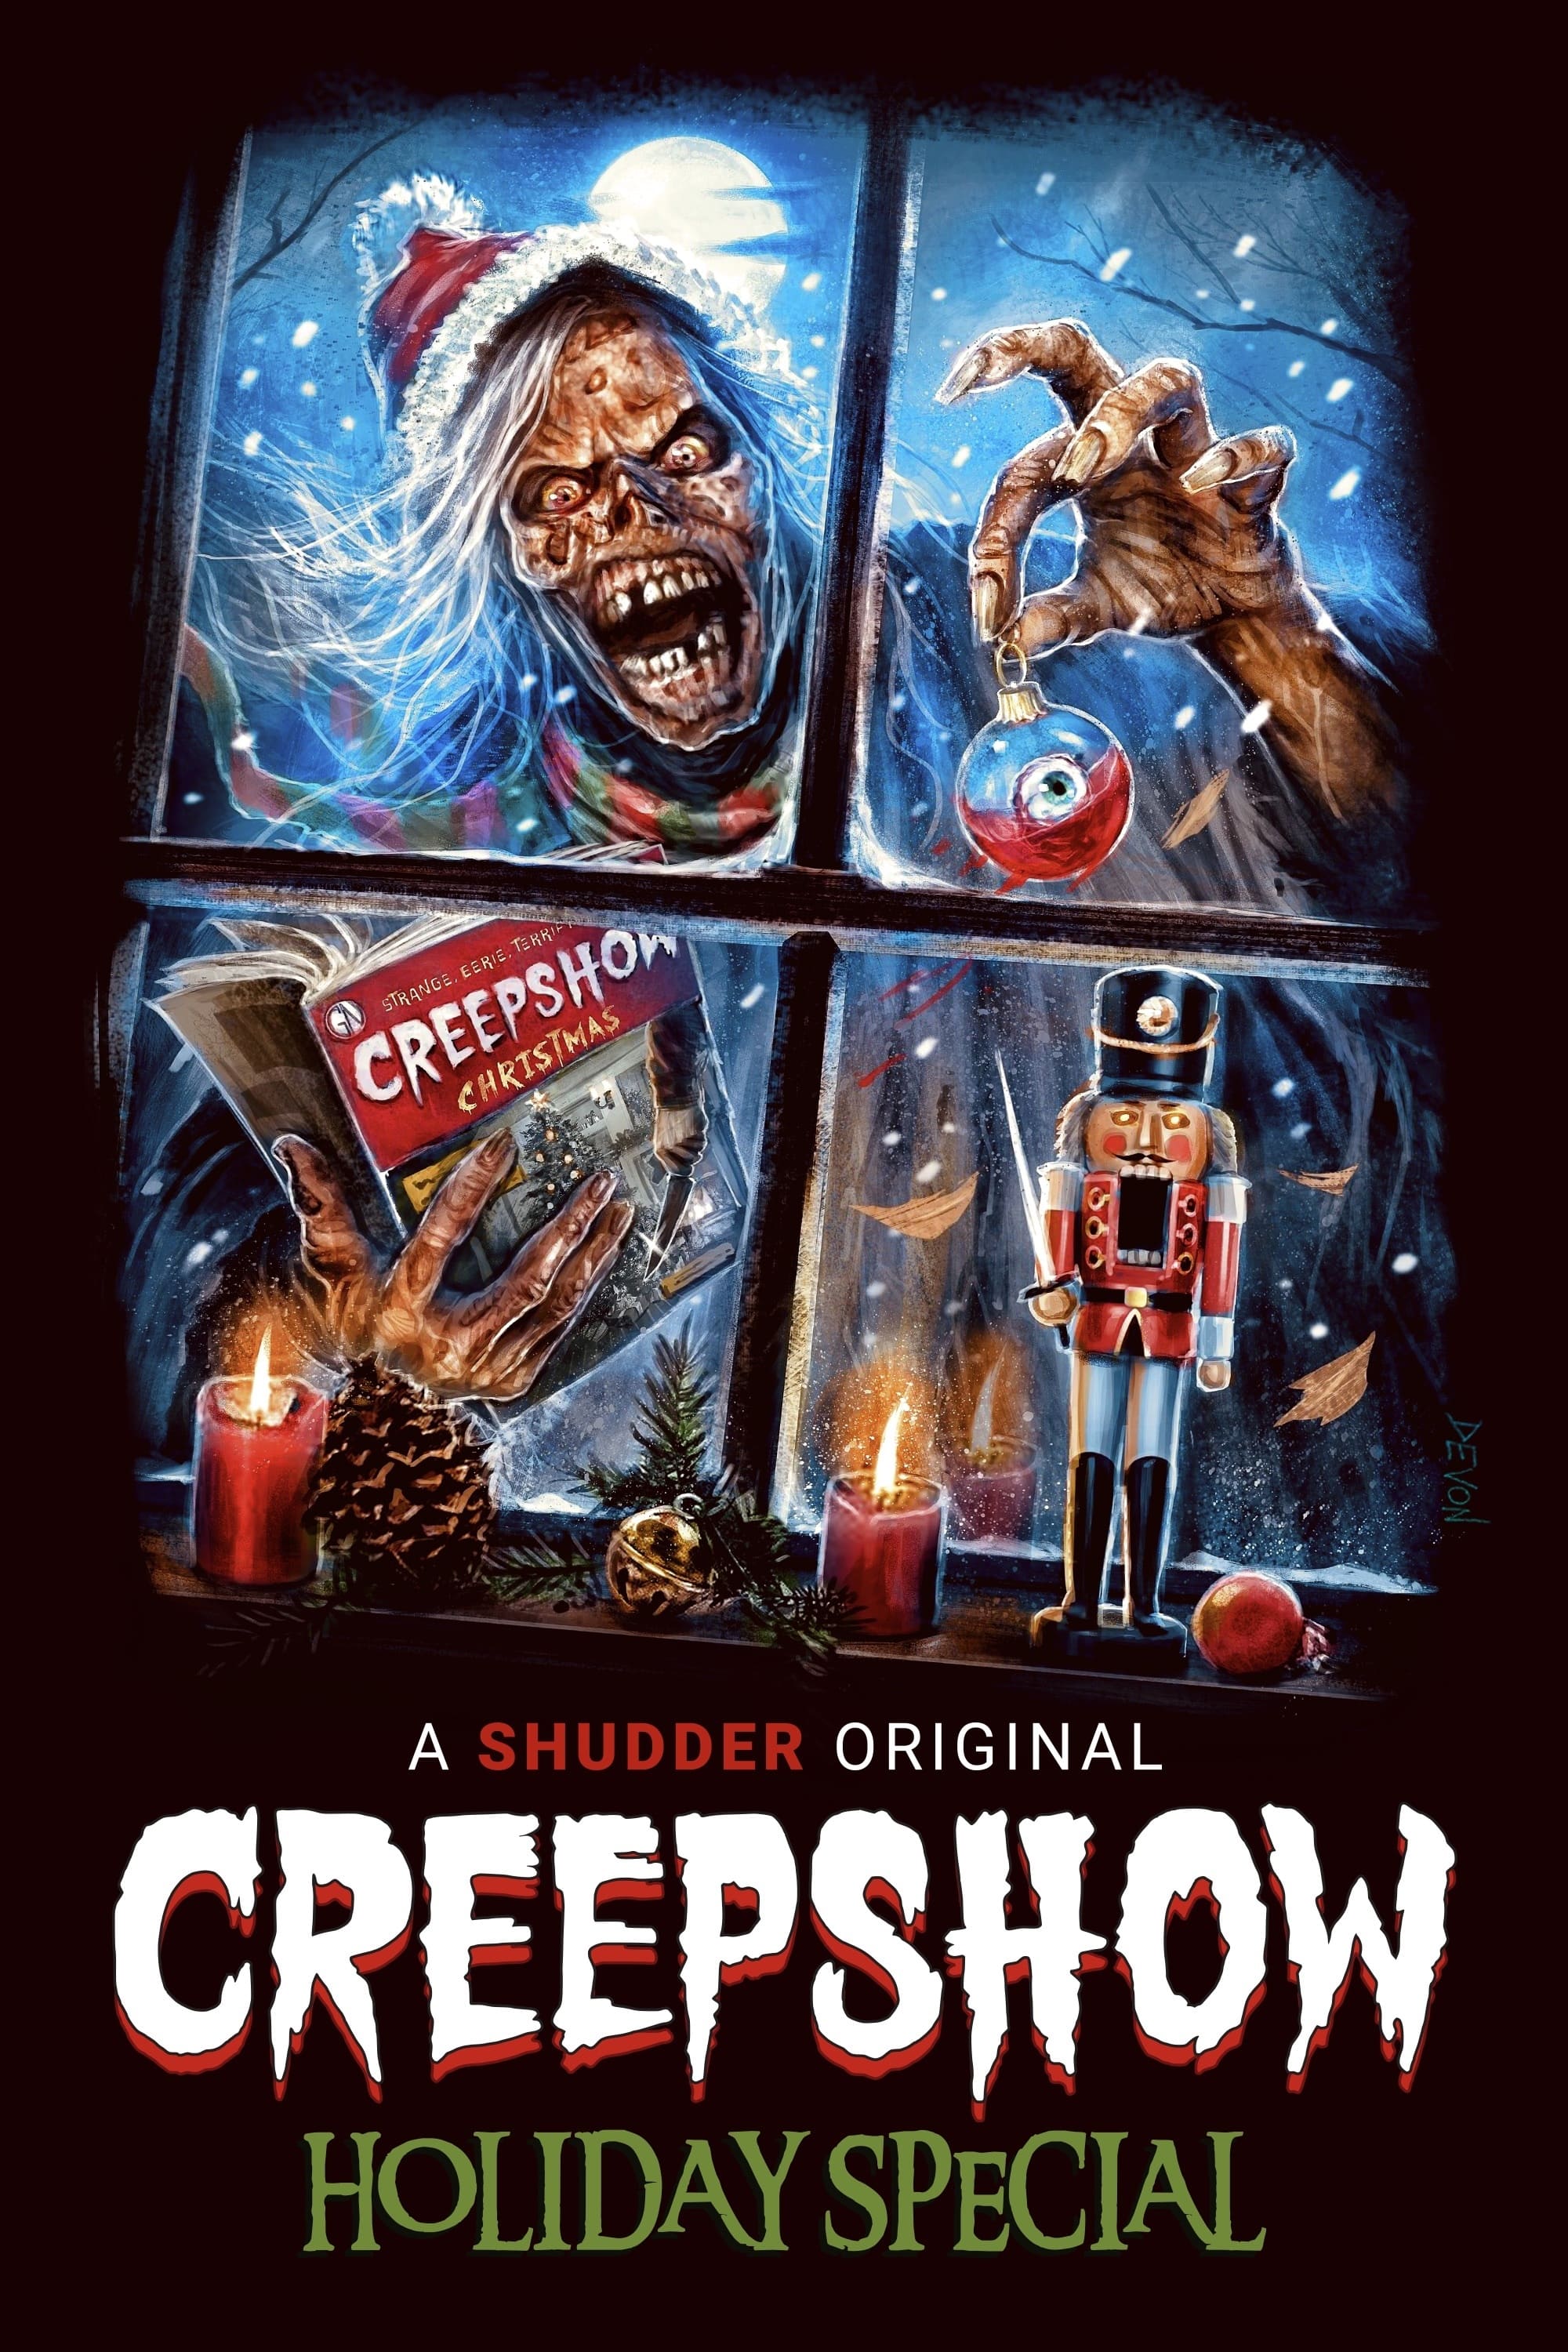 A Creepshow Holiday Special film